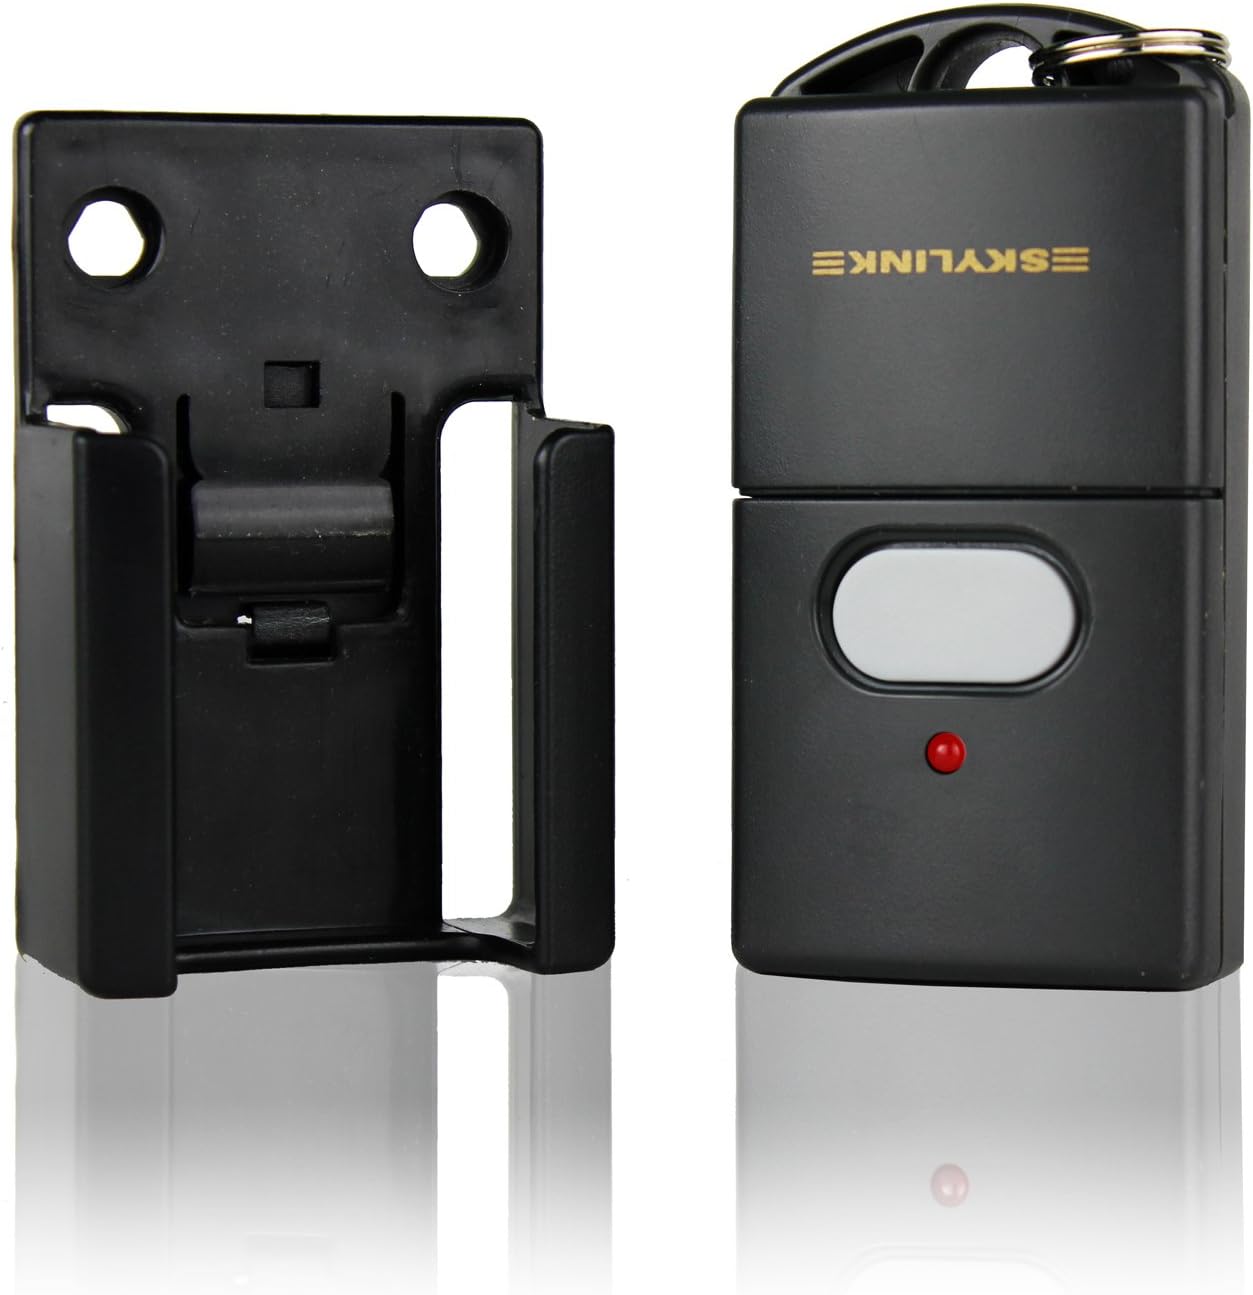 Skylink 69P Universal Garage Door Opener 1 Button Keychain Remote Control with